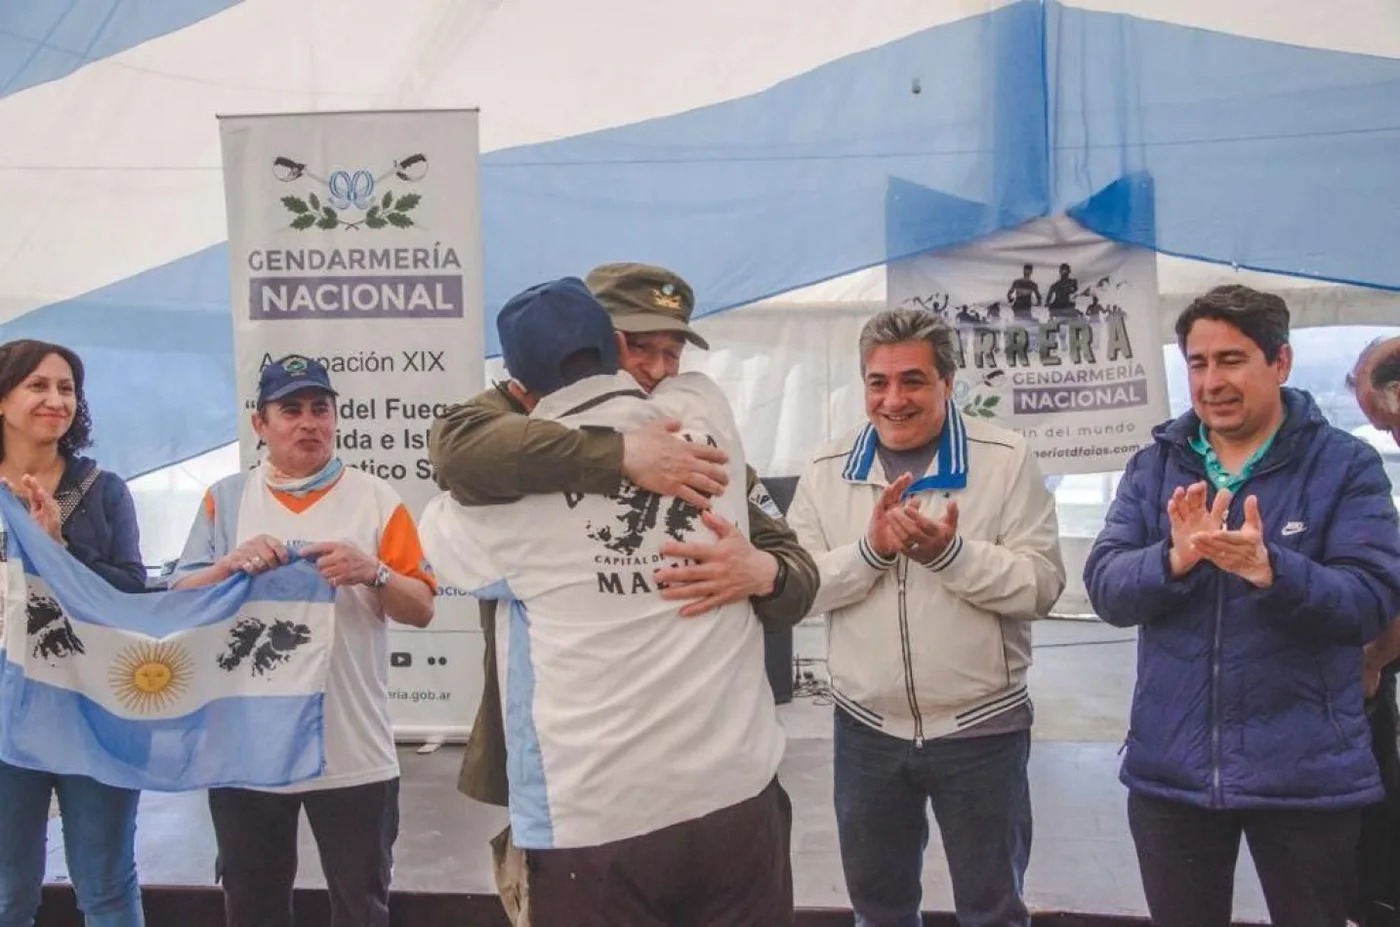 El IMD acompañó la carrera de Gendarmería Nacional en Ushuaia